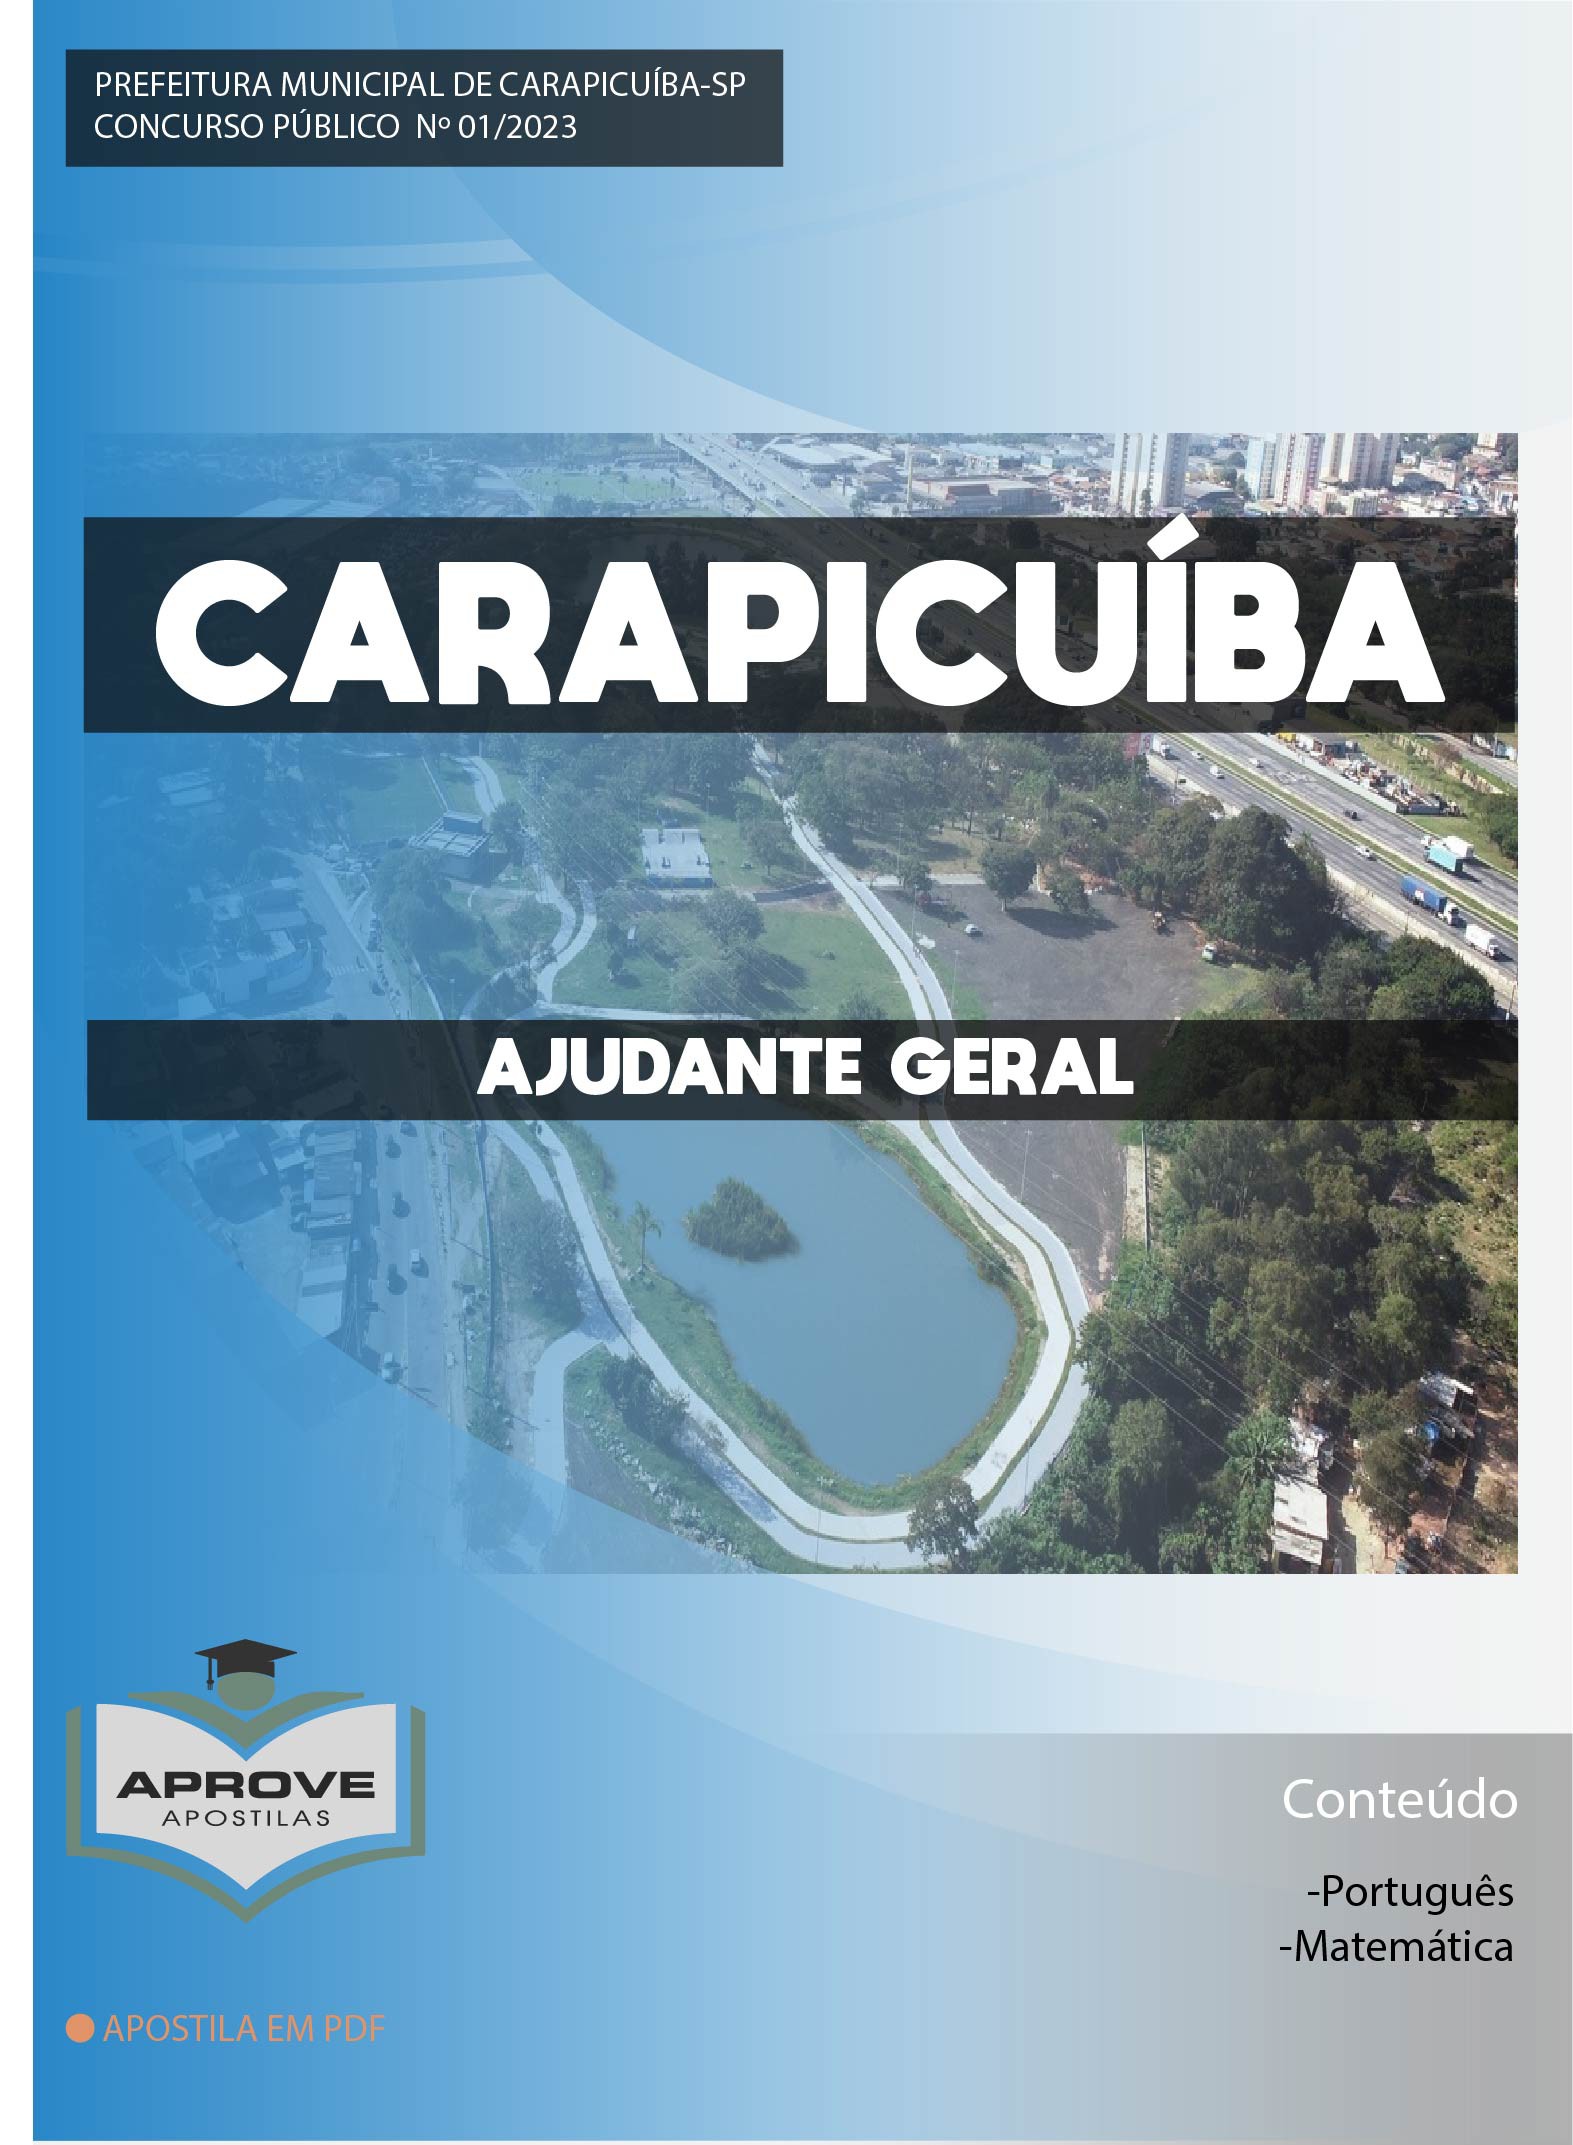 Grande SP: concurso da Prefeitura de Carapicuíba tem edital publicado